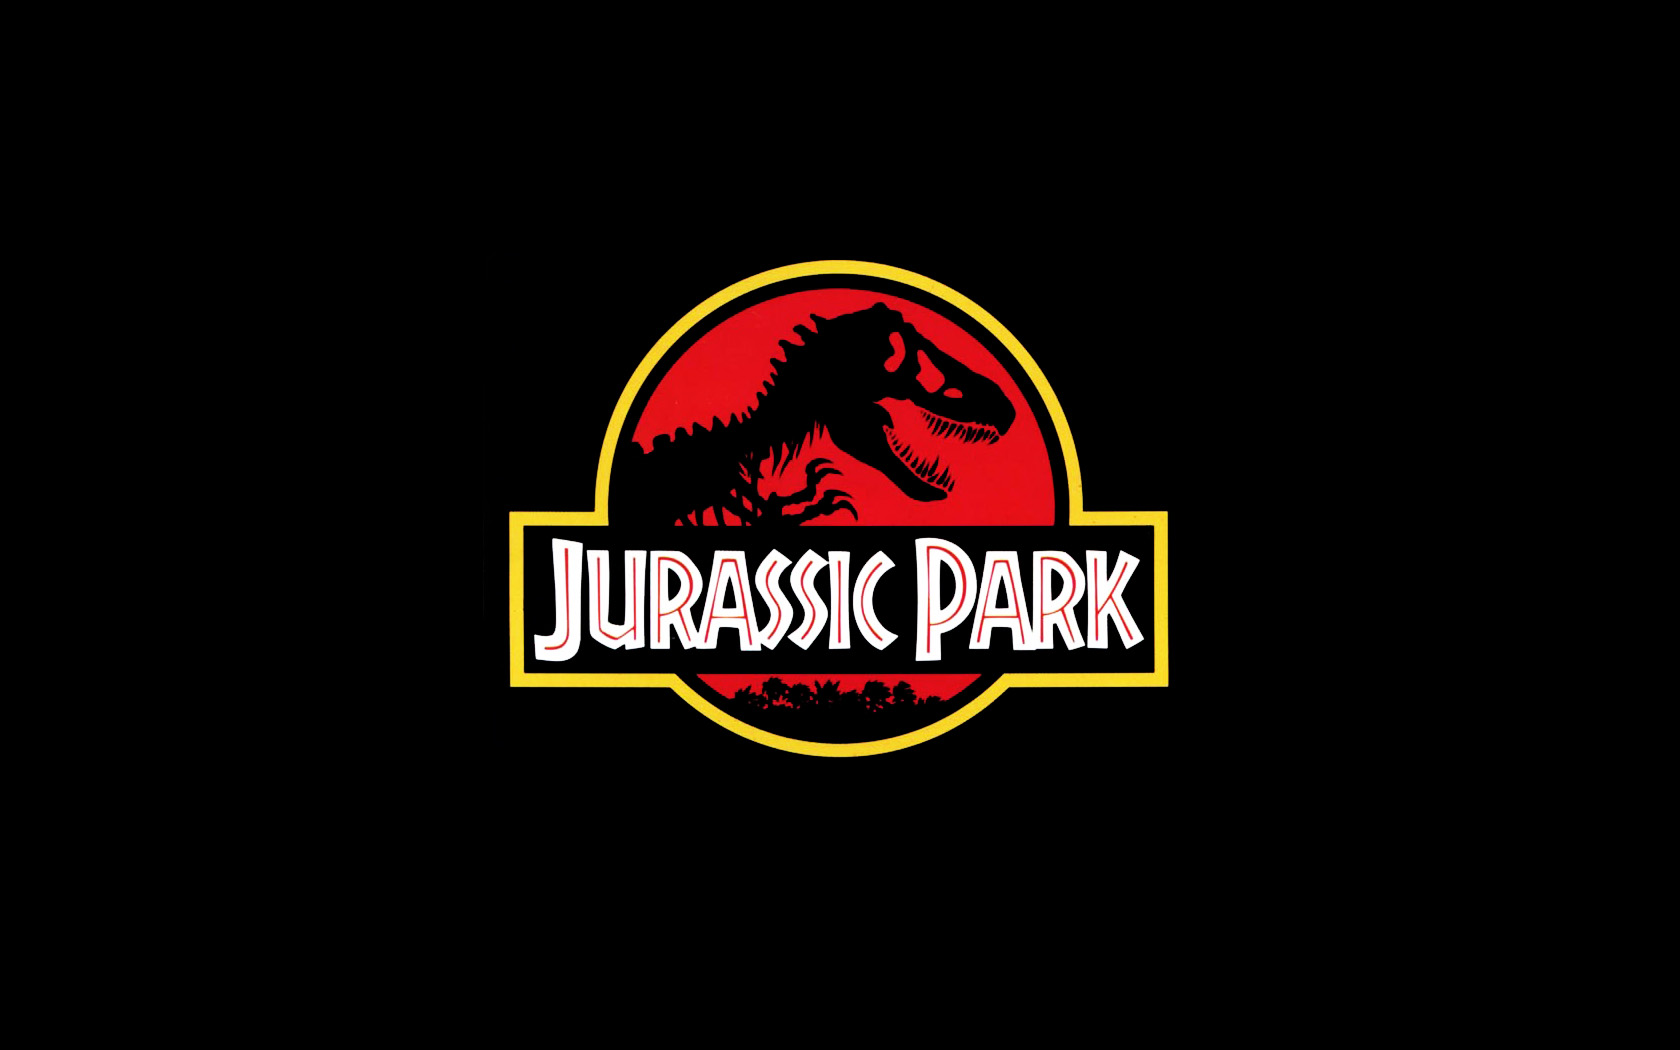 Jurassic Park Wallpapers HD - WallpaperSafari